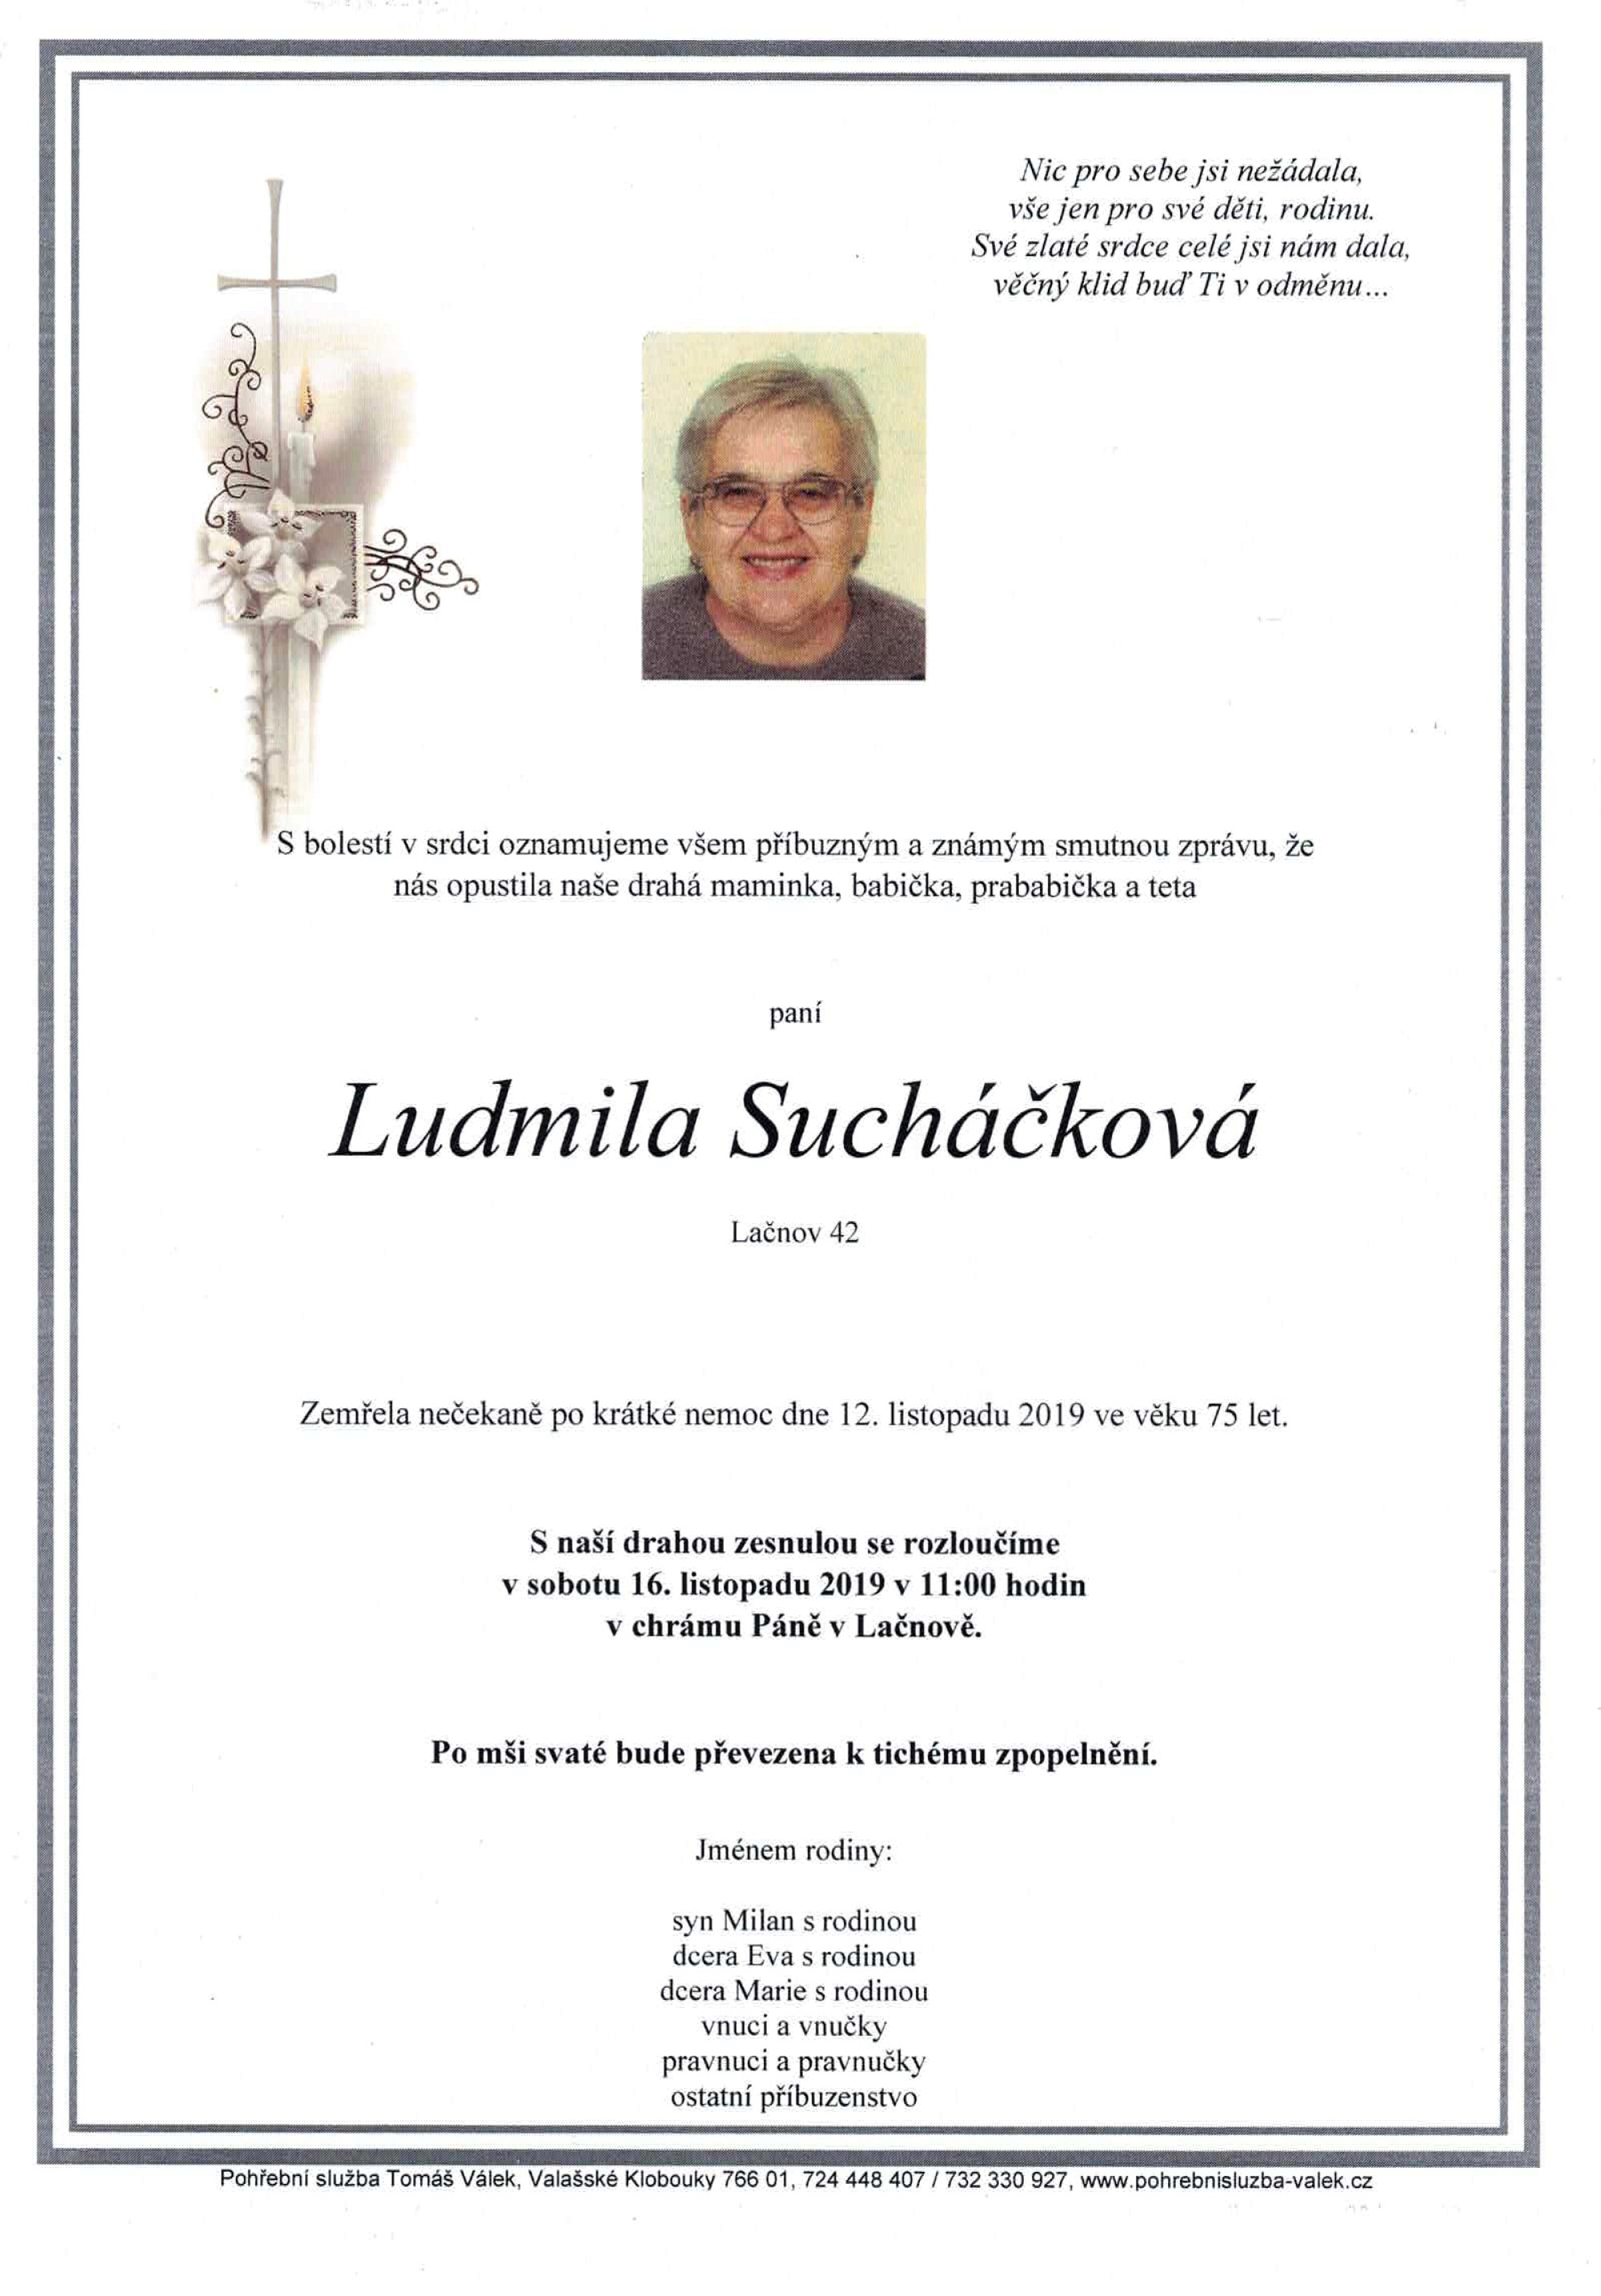 Ludmila Sucháčková